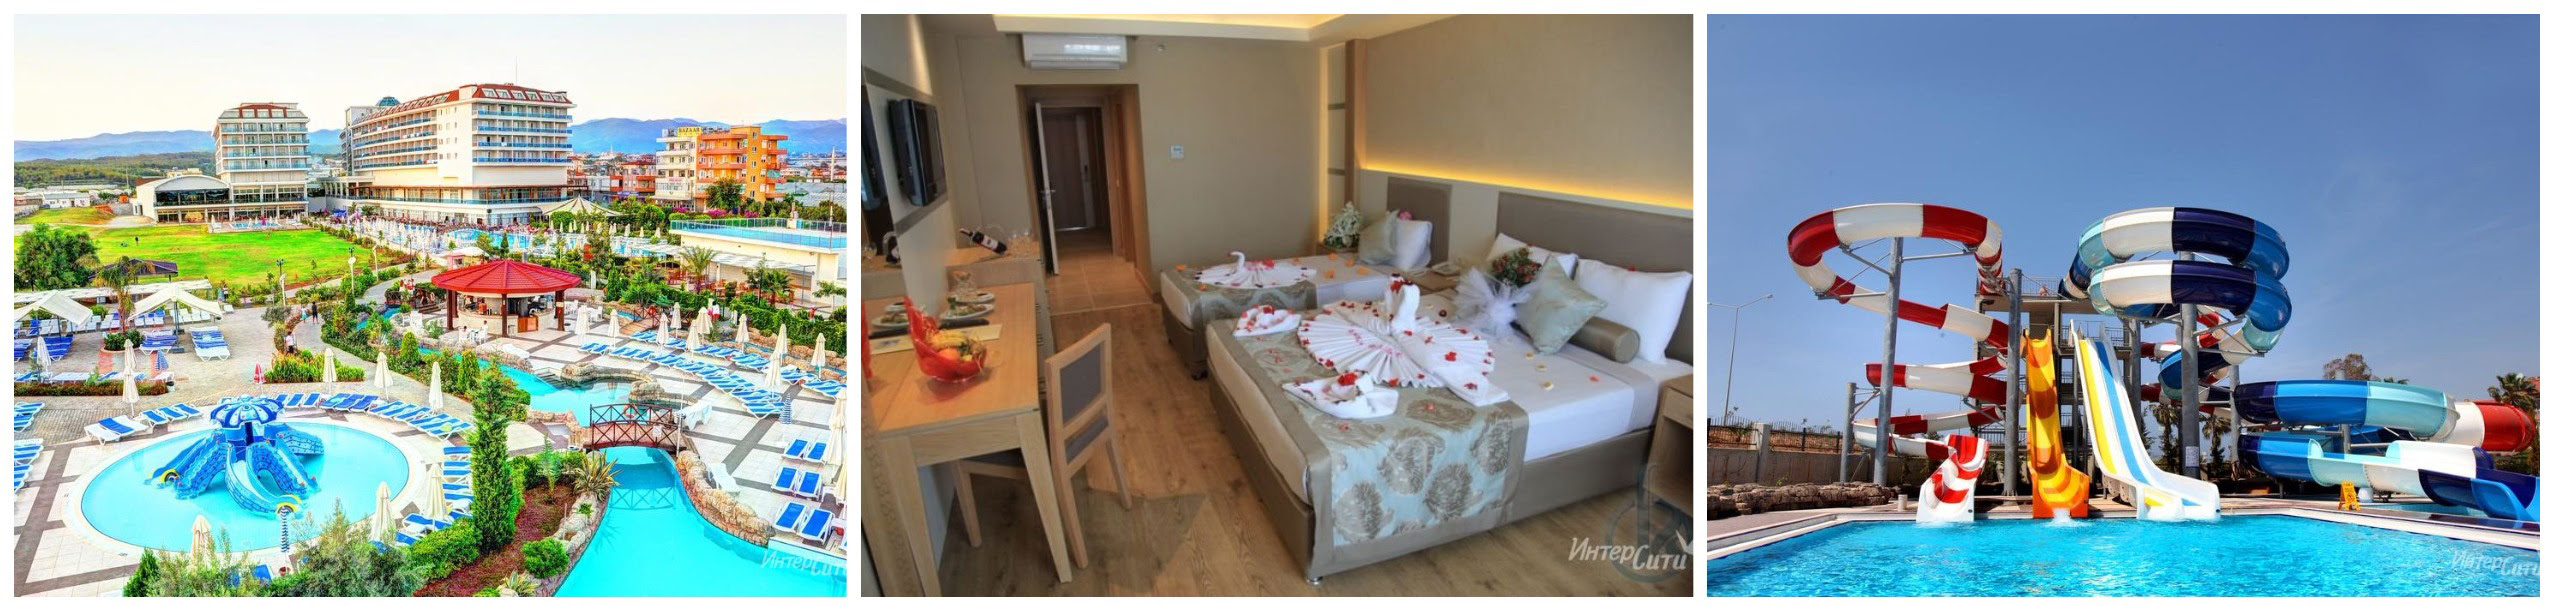 Турция, Алания - 5 проверенных отелей для отдыха с детьми